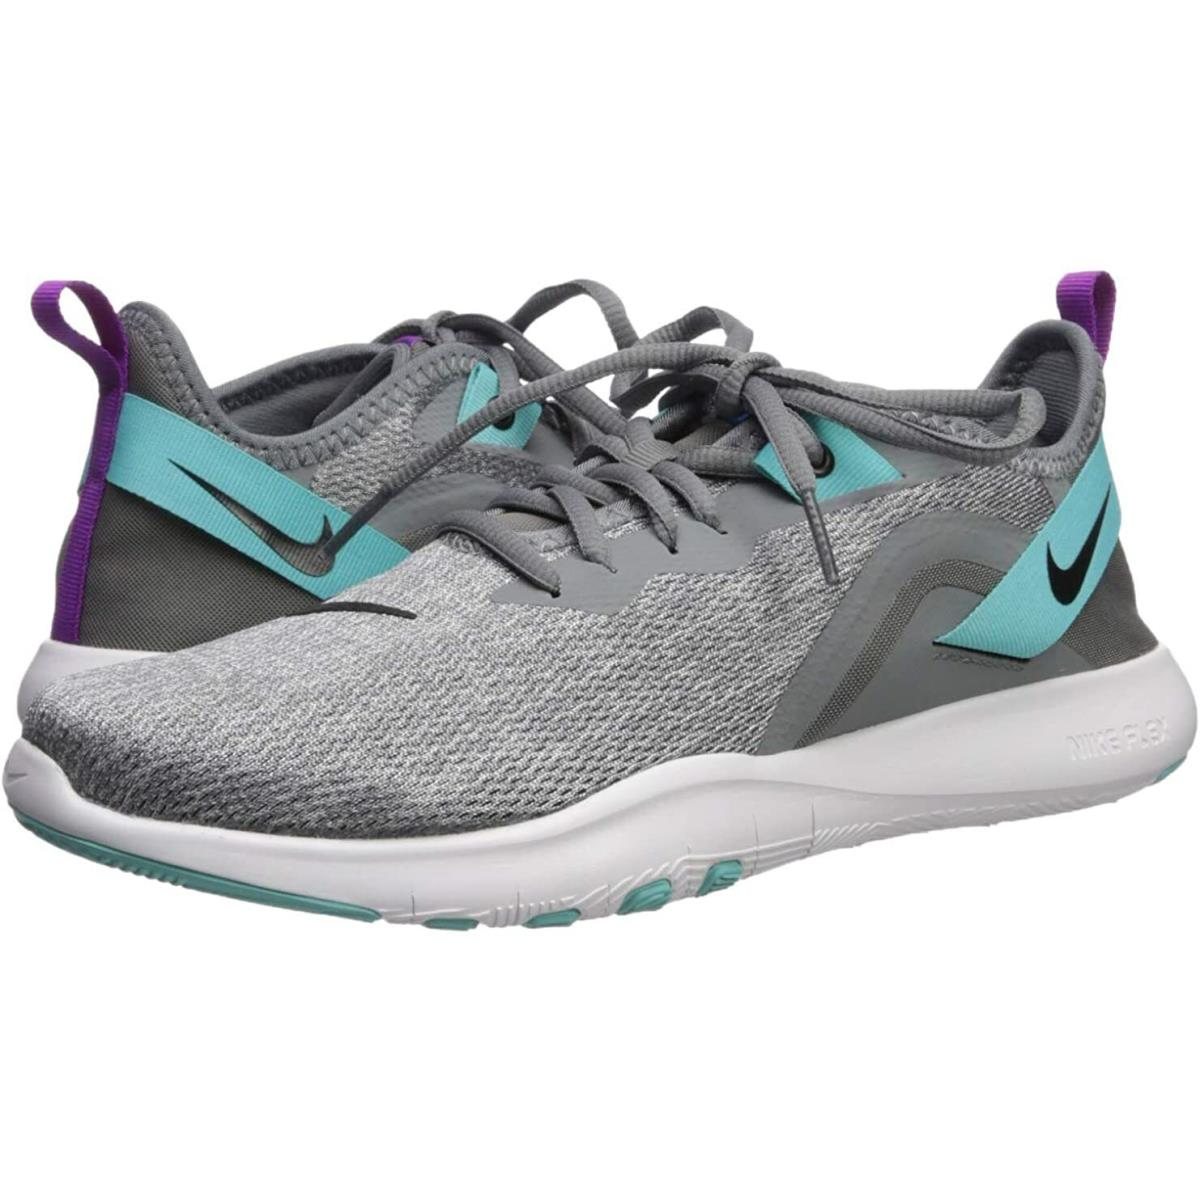 Nike Flex Trainer 9 Training Athletic Tennis Shoes Cool Gray AQ7491-005 6 - Gray